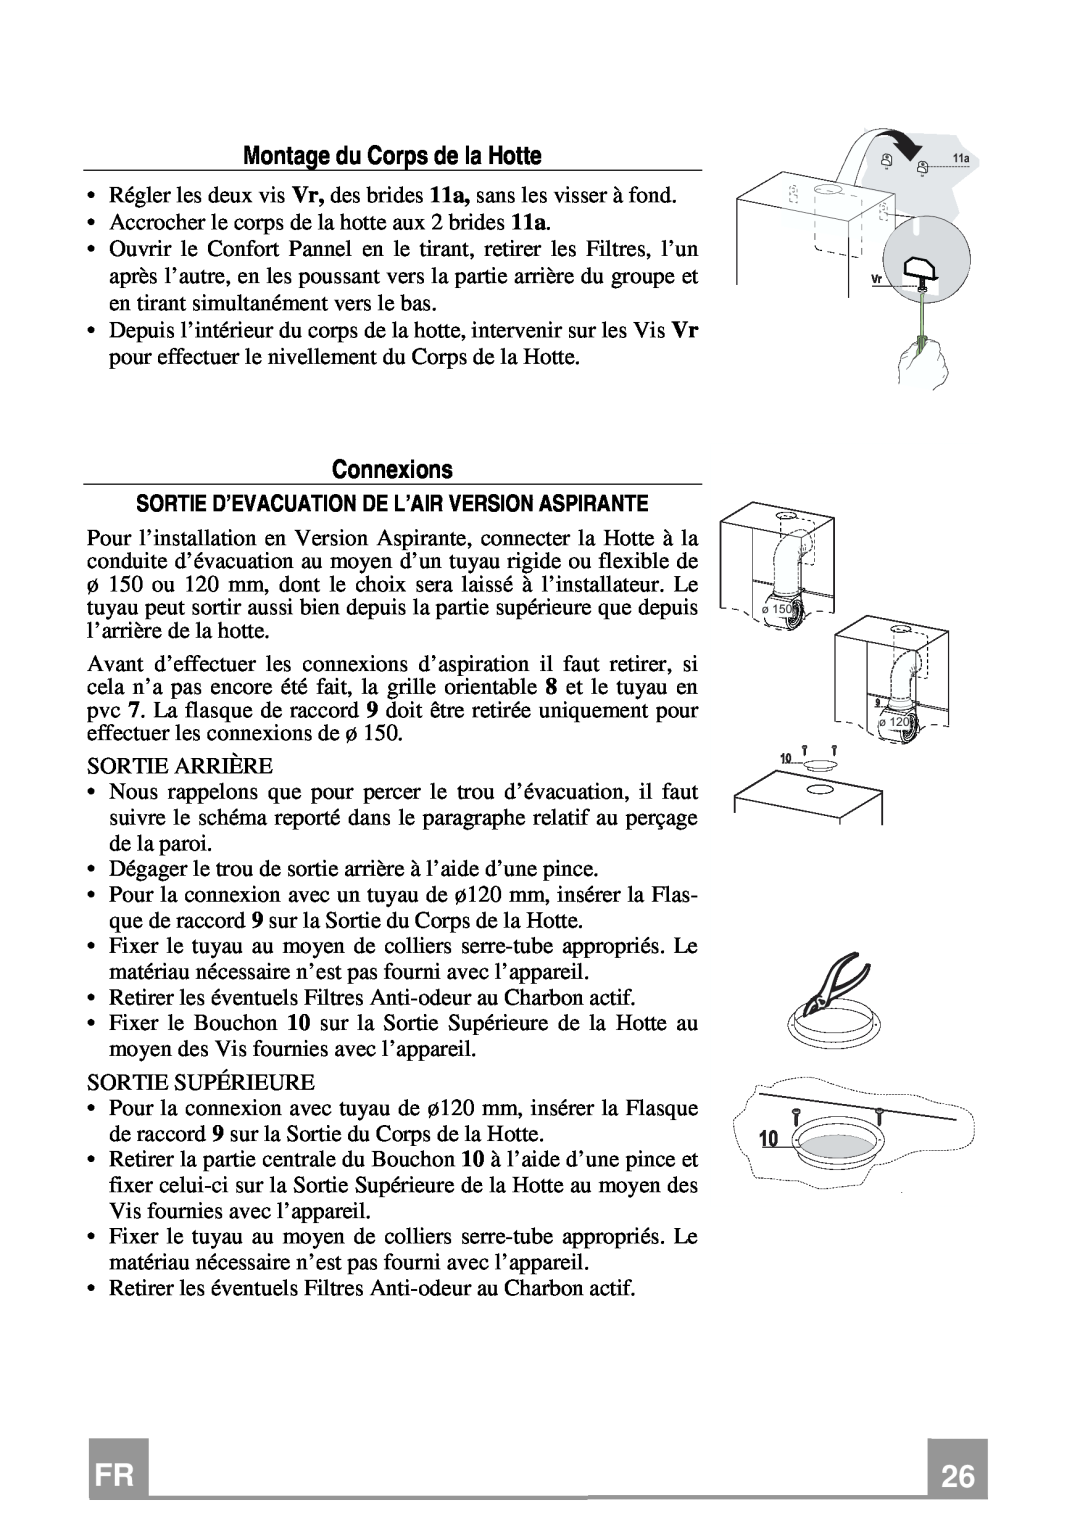 Franke Consumer Products FCR 708-H TC manual Montage du Corps de la Hotte, Connexions 